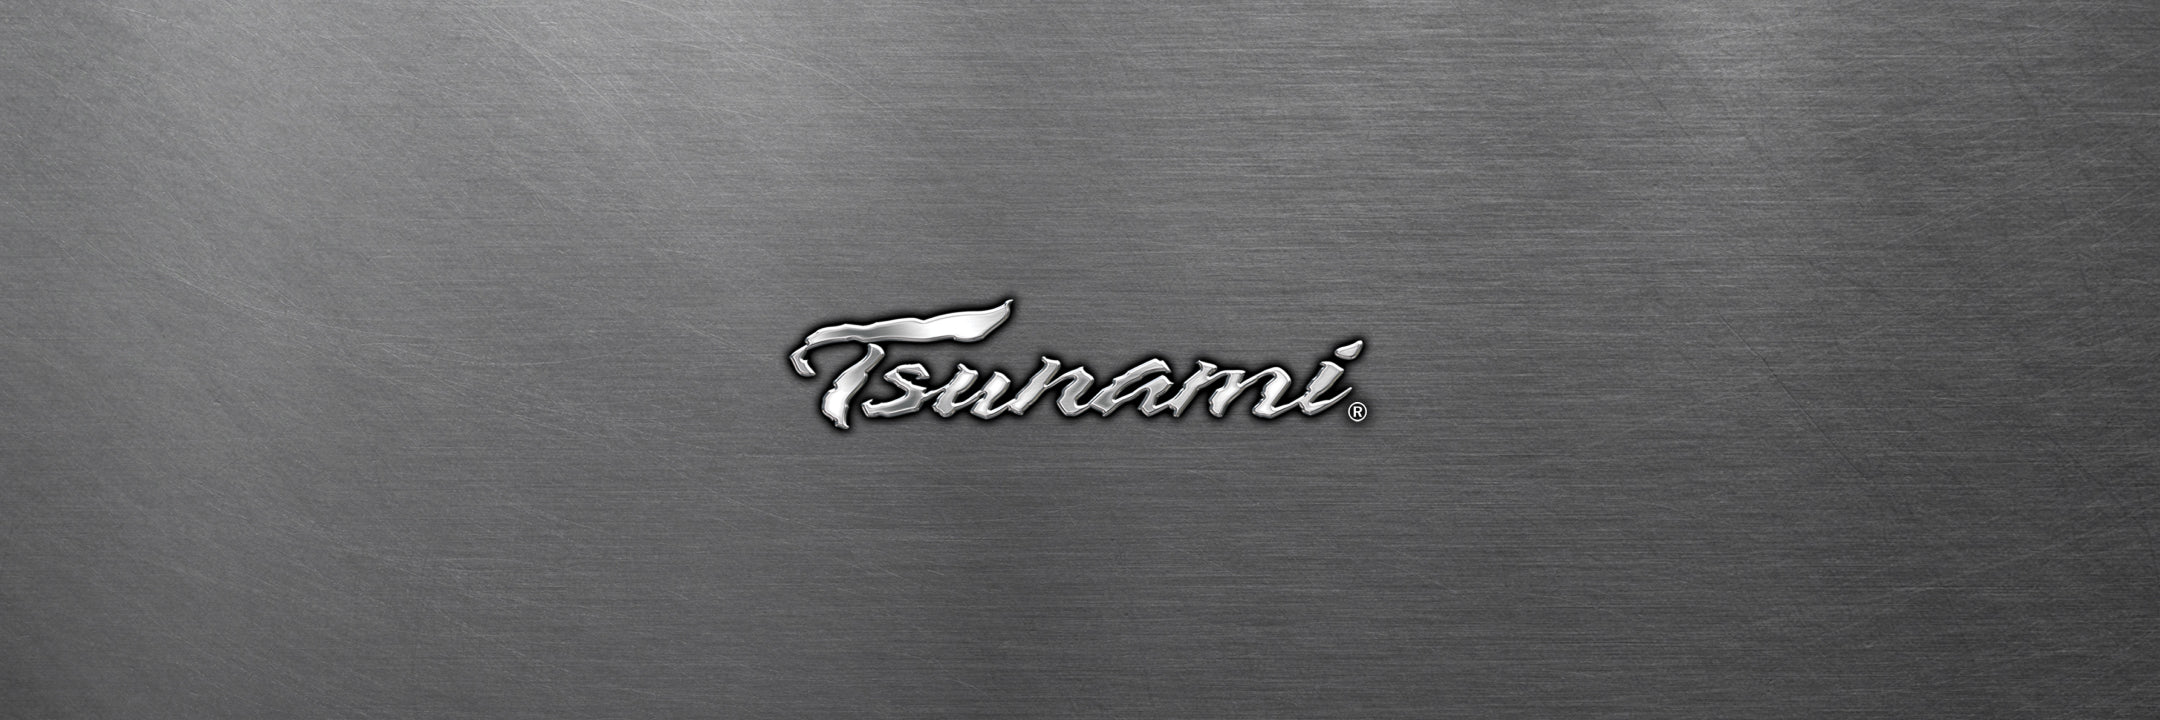 Tsunami New Releases